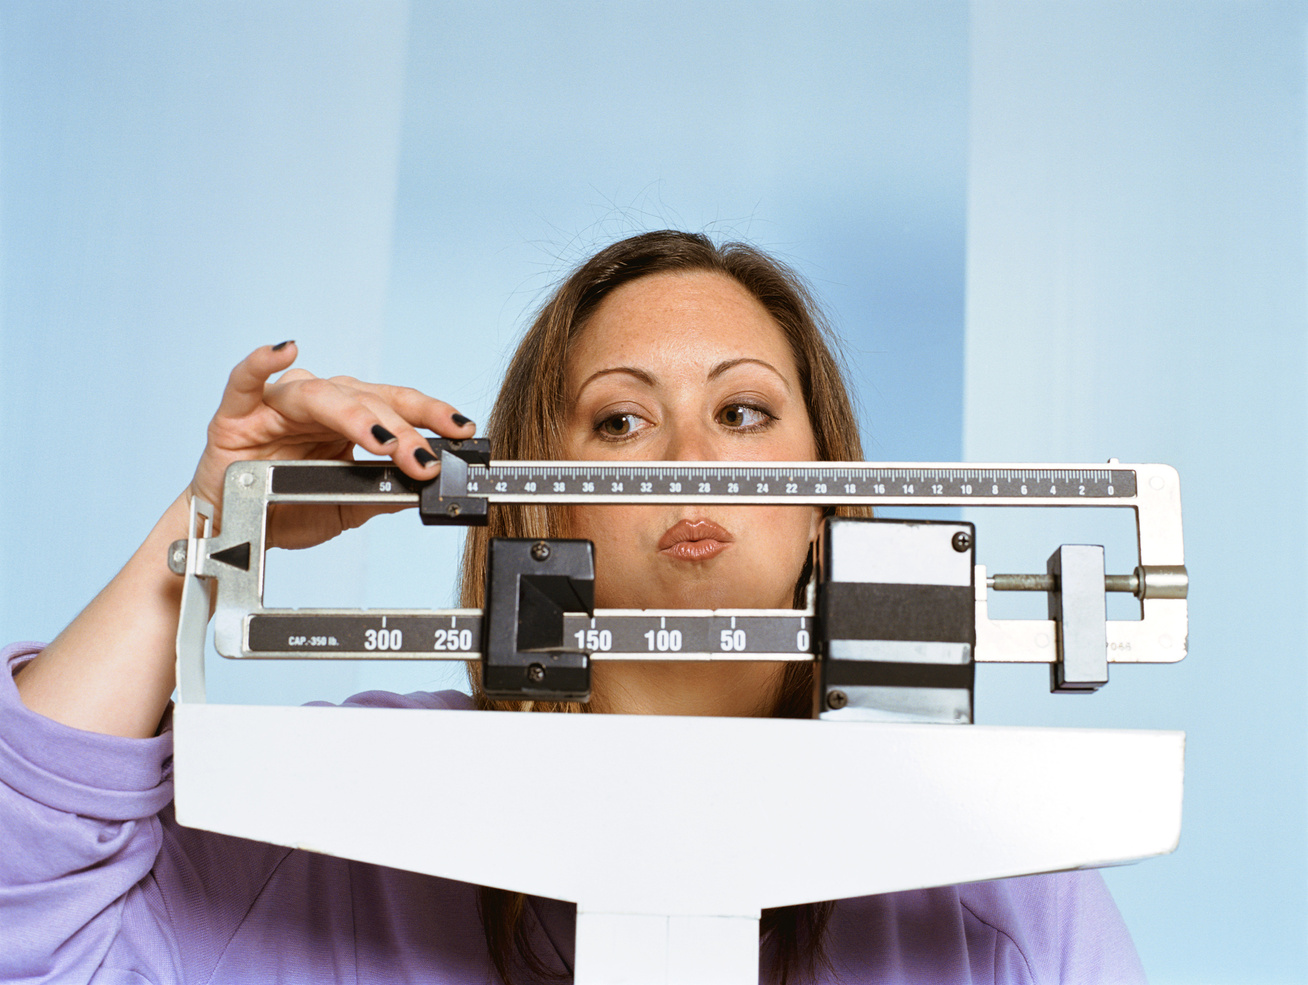 10 kiló mínusz tavaszig: 1 hónapos étrend és edzésterv a személyi edzőtől - Fogyókúra | Femina